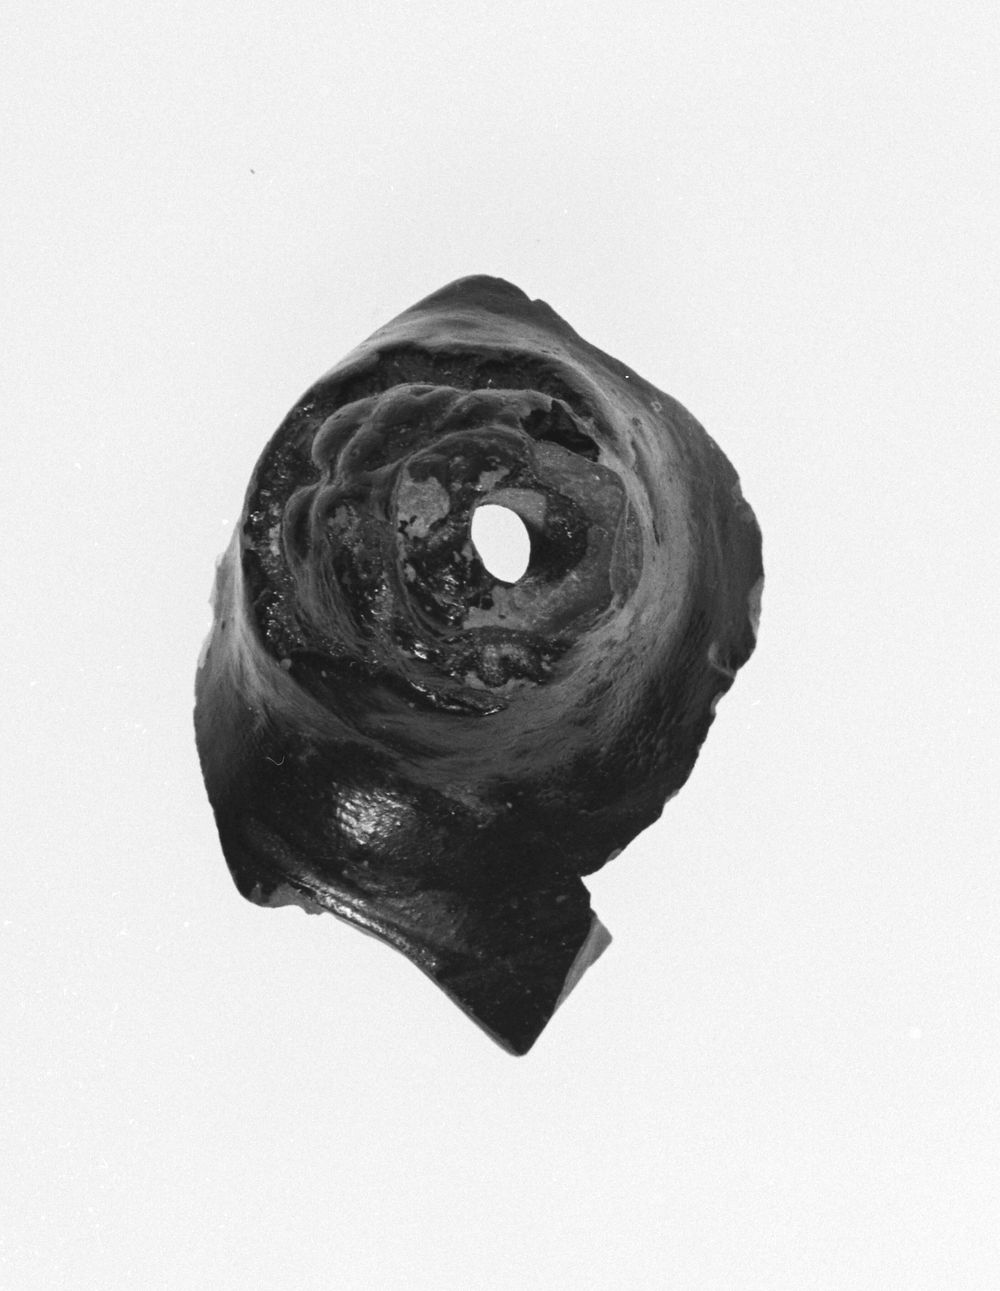 Vase Fragment